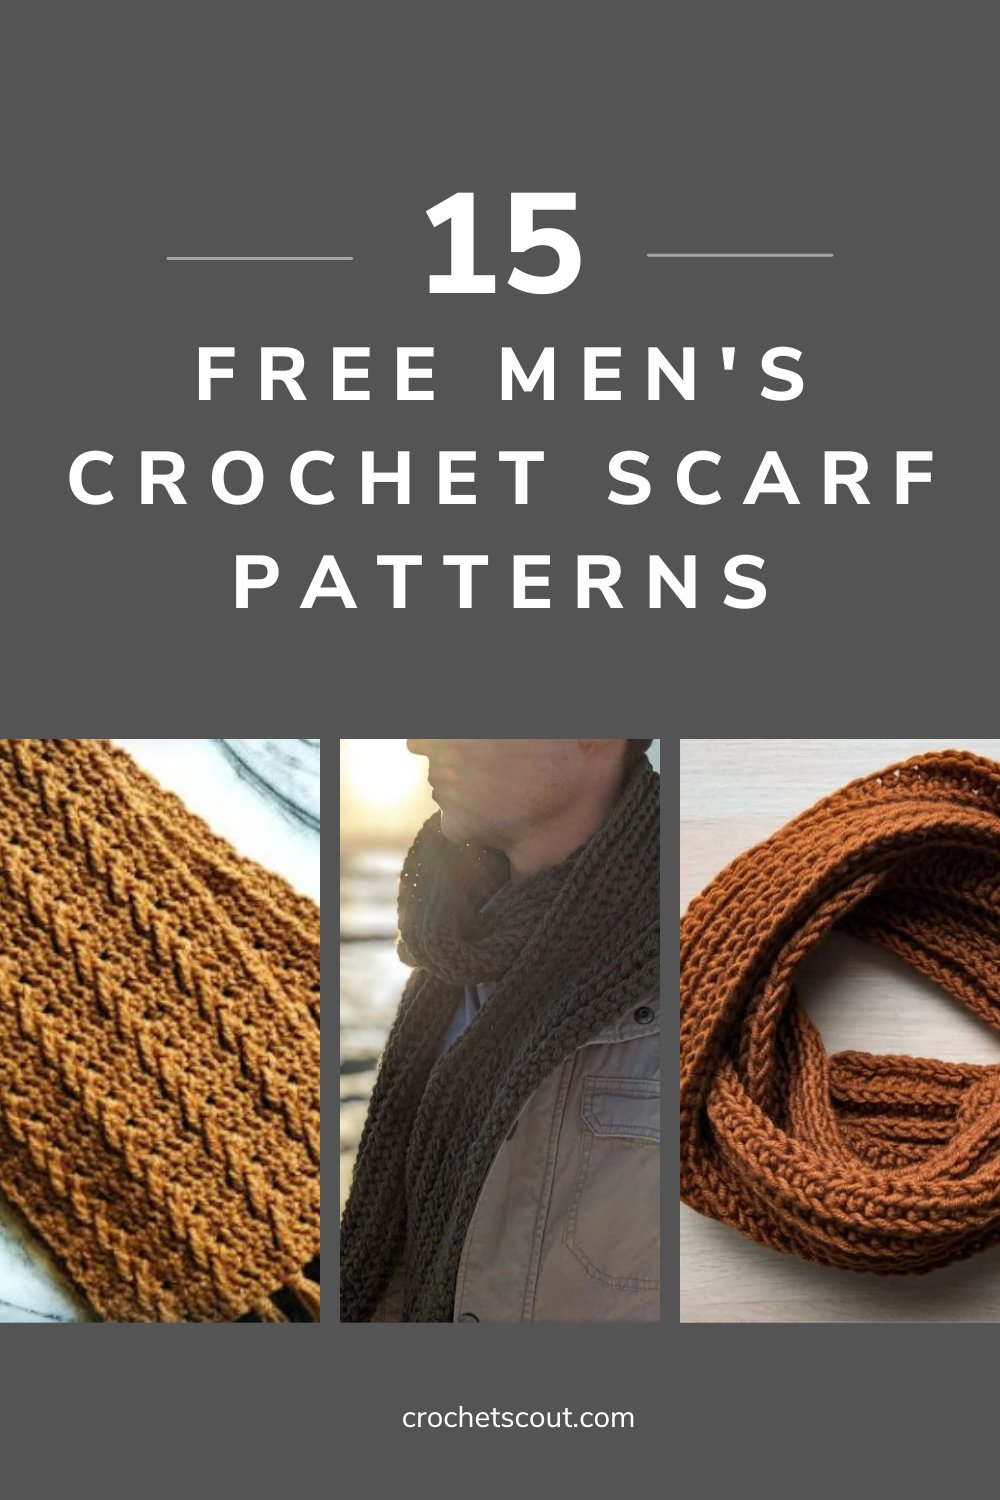 The Best Free Men's Crochet Scarf Patterns - Crochet Scout